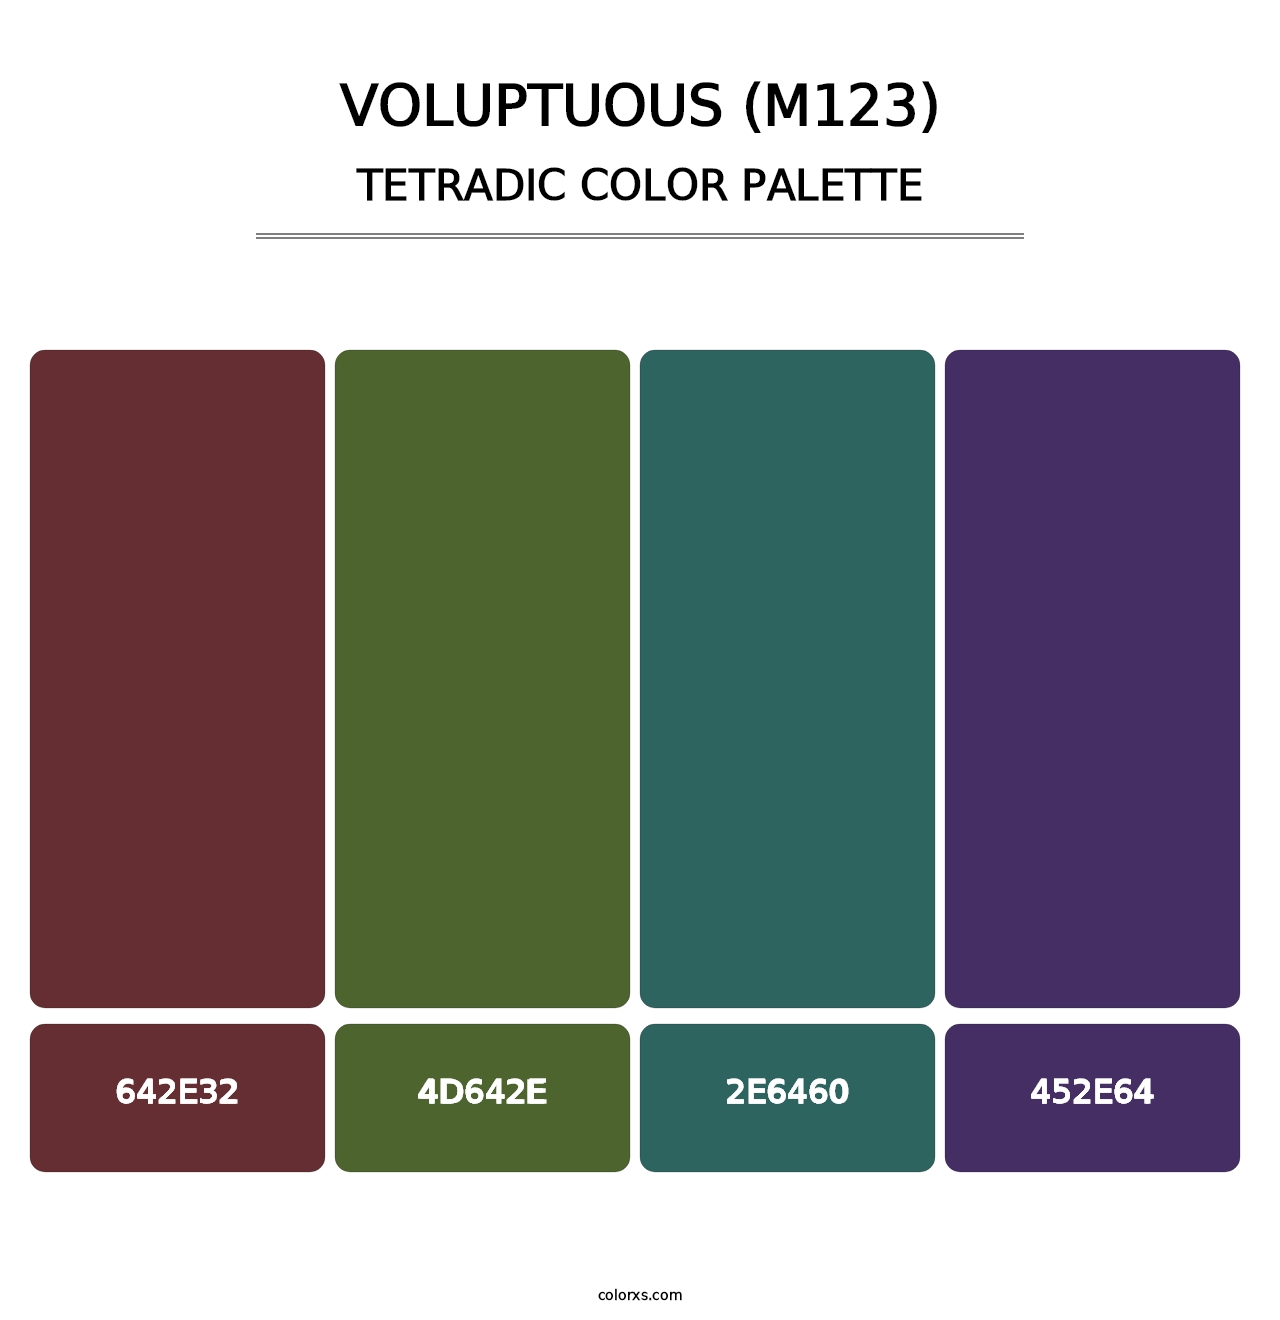 Voluptuous (M123) - Tetradic Color Palette